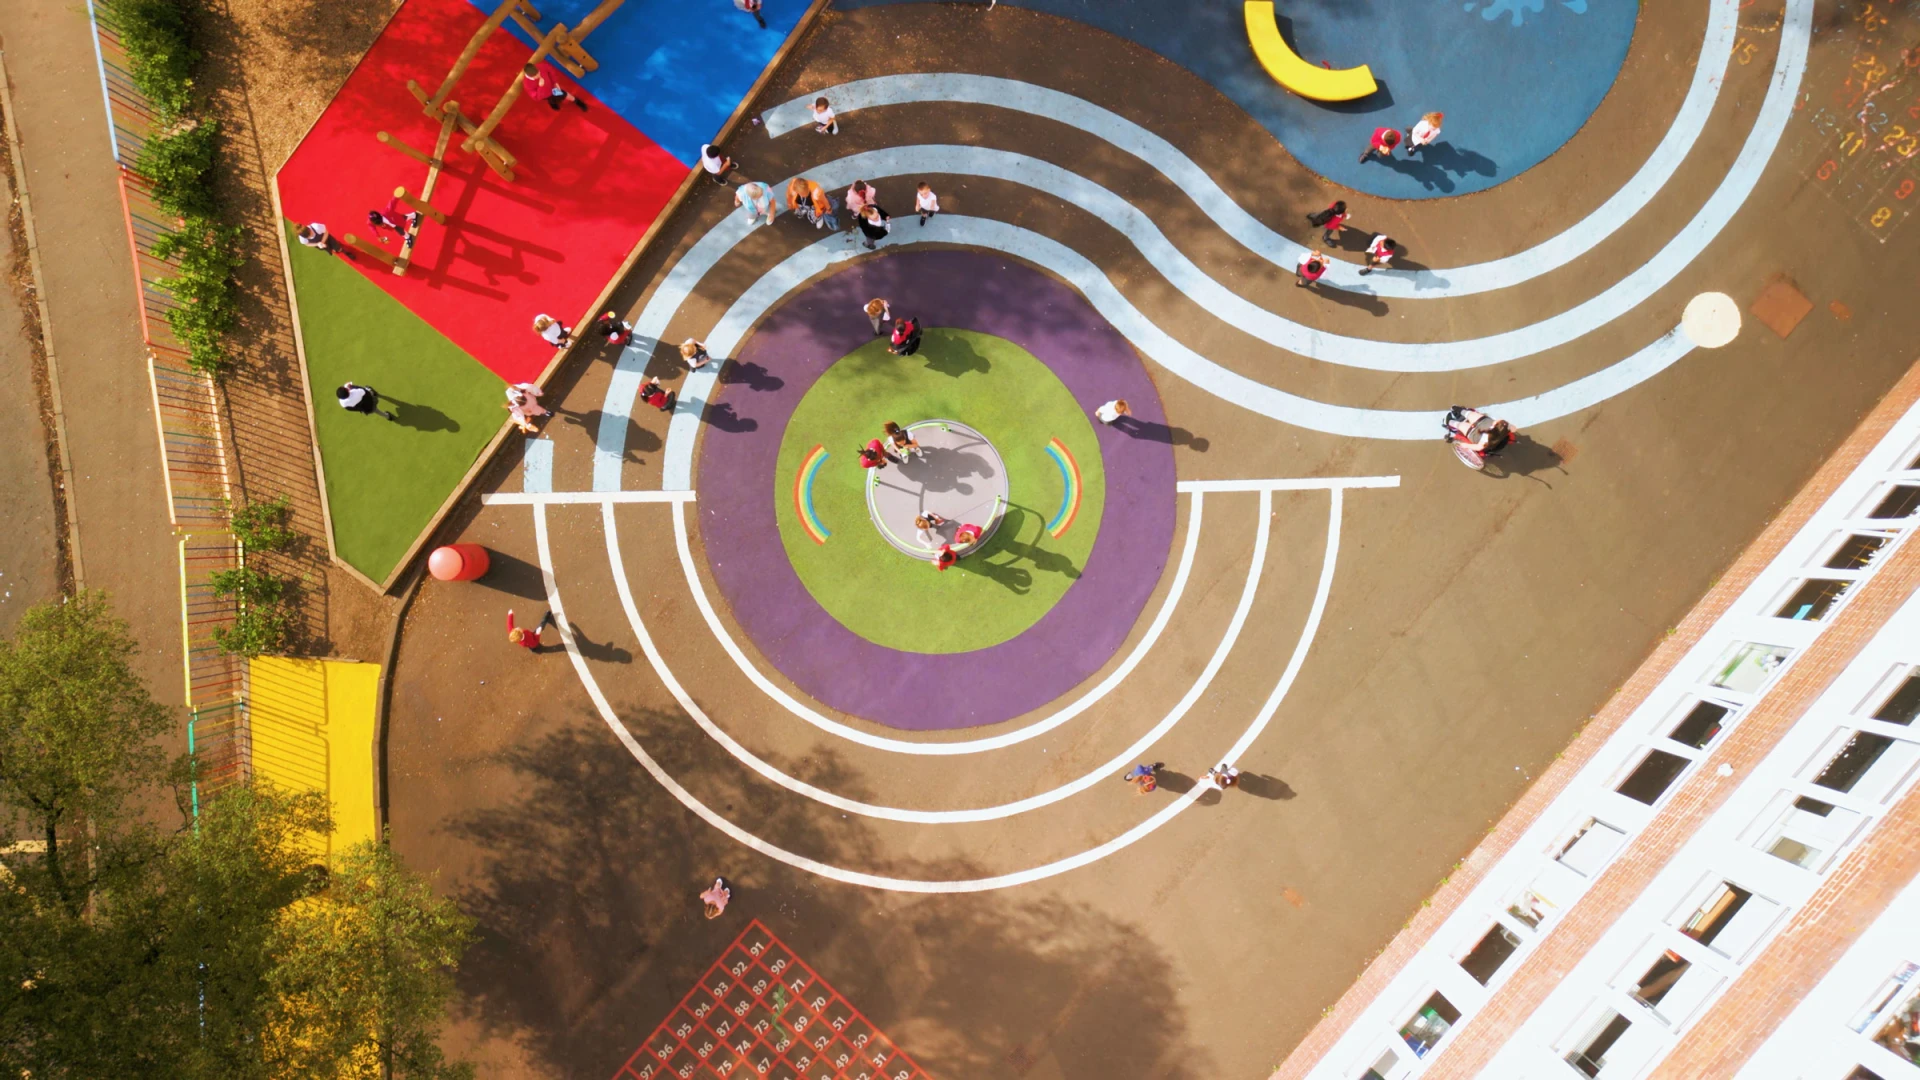 Vue aérienne d'une cour de récréation d'une école pour enfants avec un revêtement en pâte à modeler.